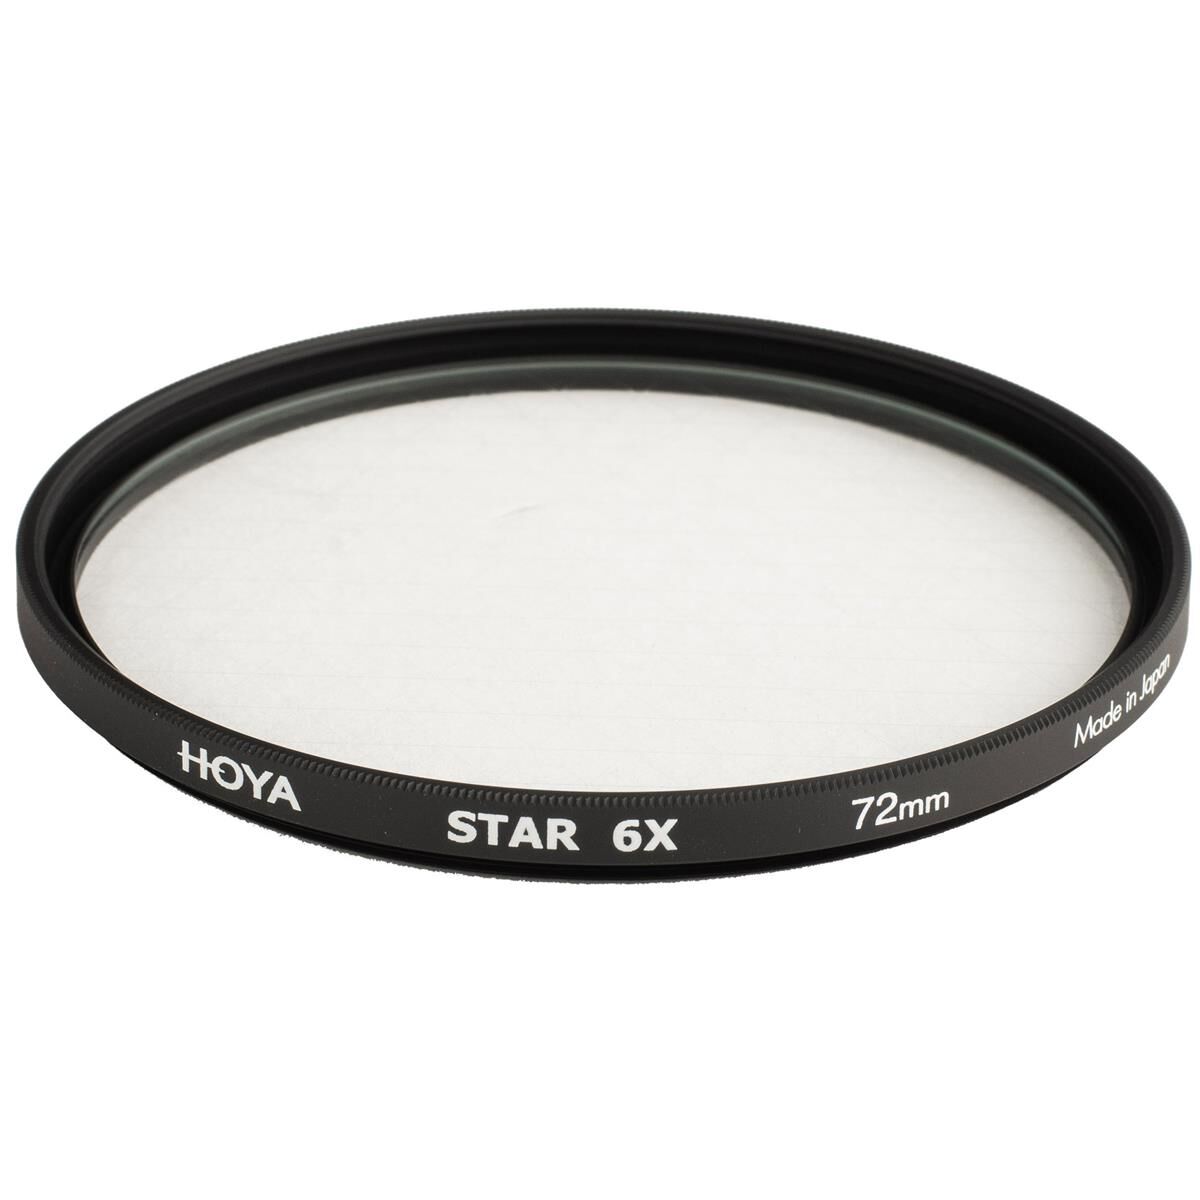 Hoya 72mm Creative Star 6X Cross Screen Glass Filter